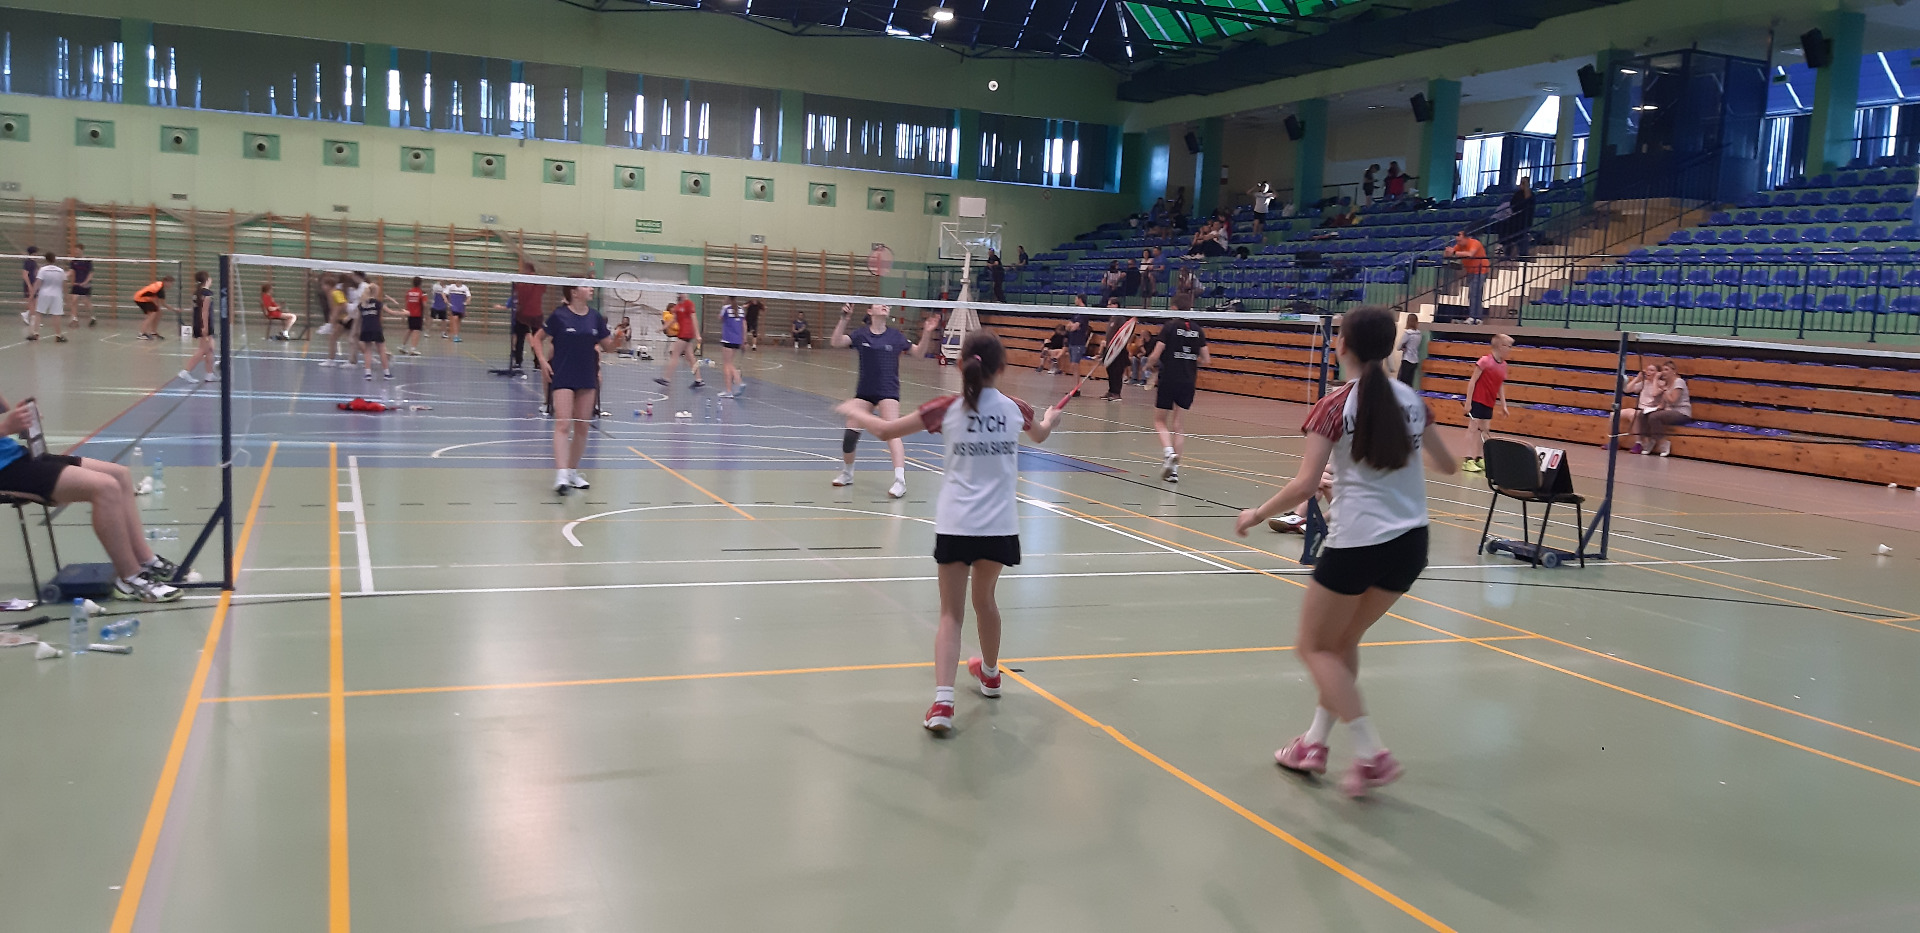 Krajowy Turniej Badmintona w Solcu Kujawskim 🏸 🏆 🥇 - Obrazek 5